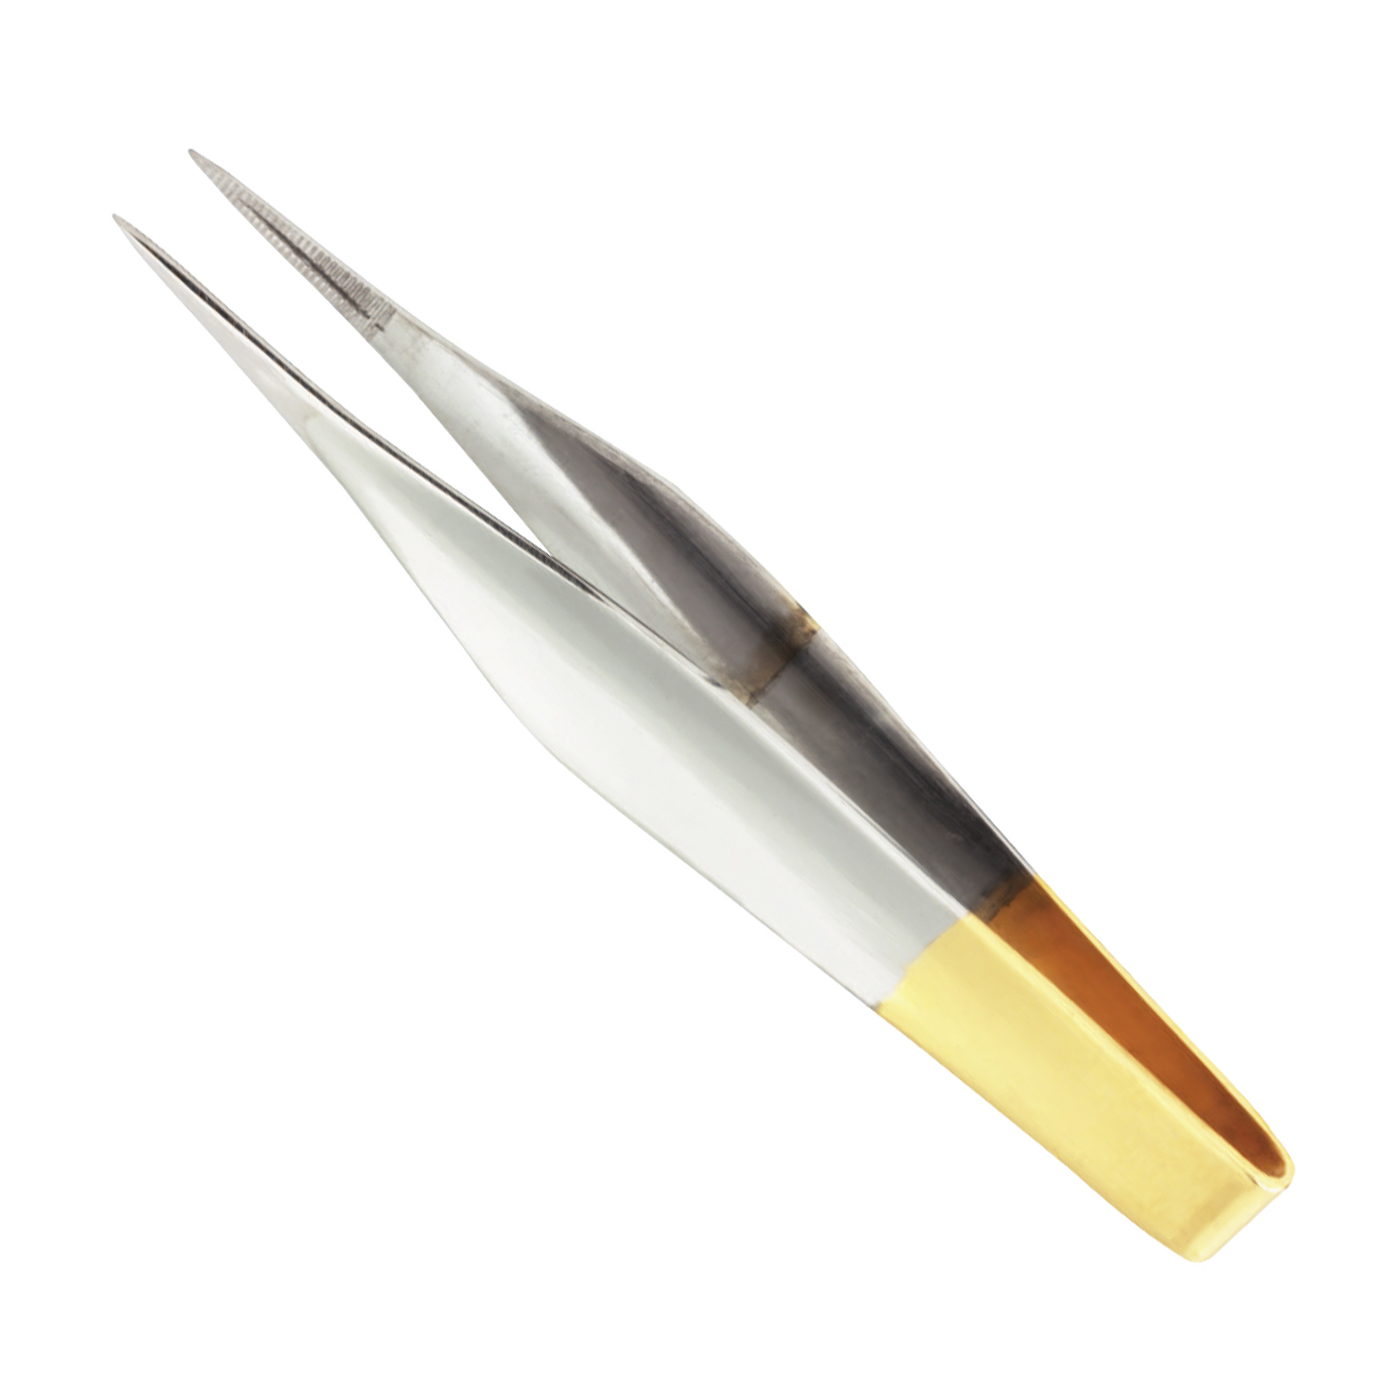 FINO Folienpinzette, gerieft, mit goldfarbenem Griff, 115 mm - 1 Stück